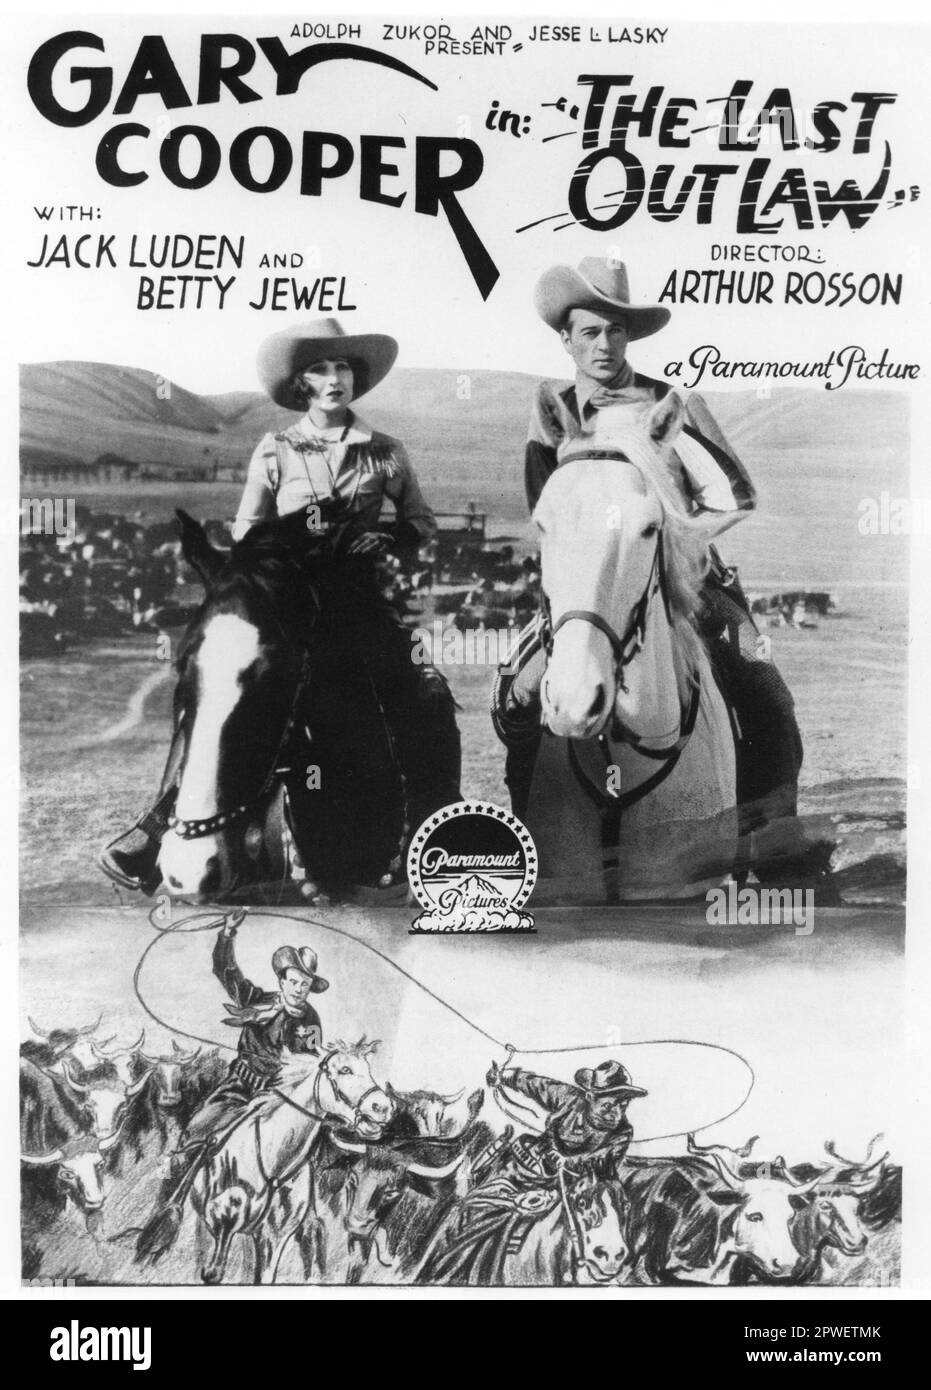 Affiche art de GARY COOPER et BETTY BIJOU pour The Silent Western THE LAST OUTLAW 1927 réalisateur ARTHUR ROSSON Paramount Pictures Banque D'Images